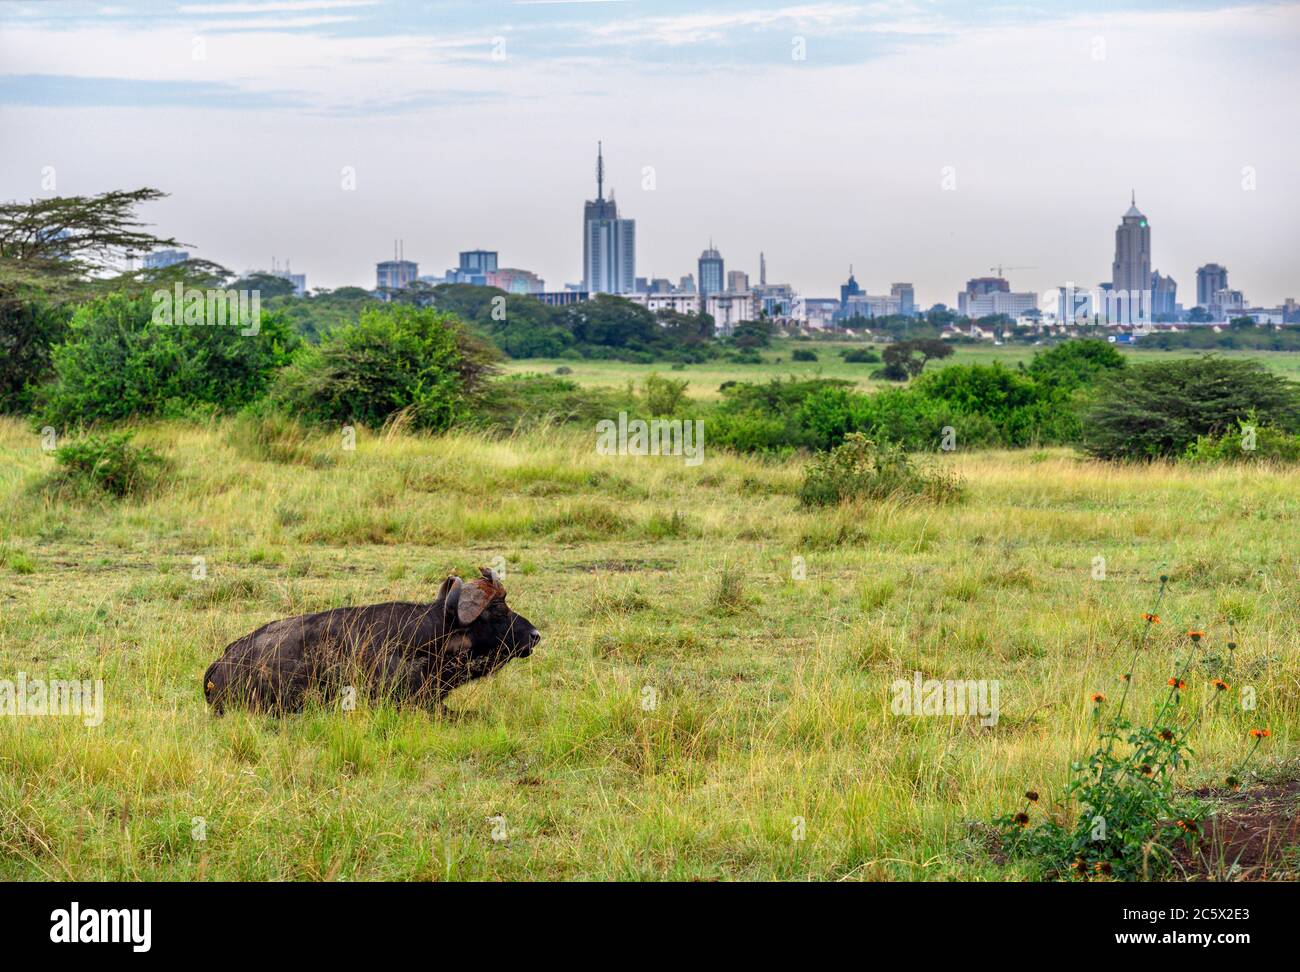 Búfalo africano o búfalo de Cabo (Syncerus caffer) con el horizonte de la ciudad detrás, Parque Nacional de Nairobi, Kenia, África Oriental Foto de stock